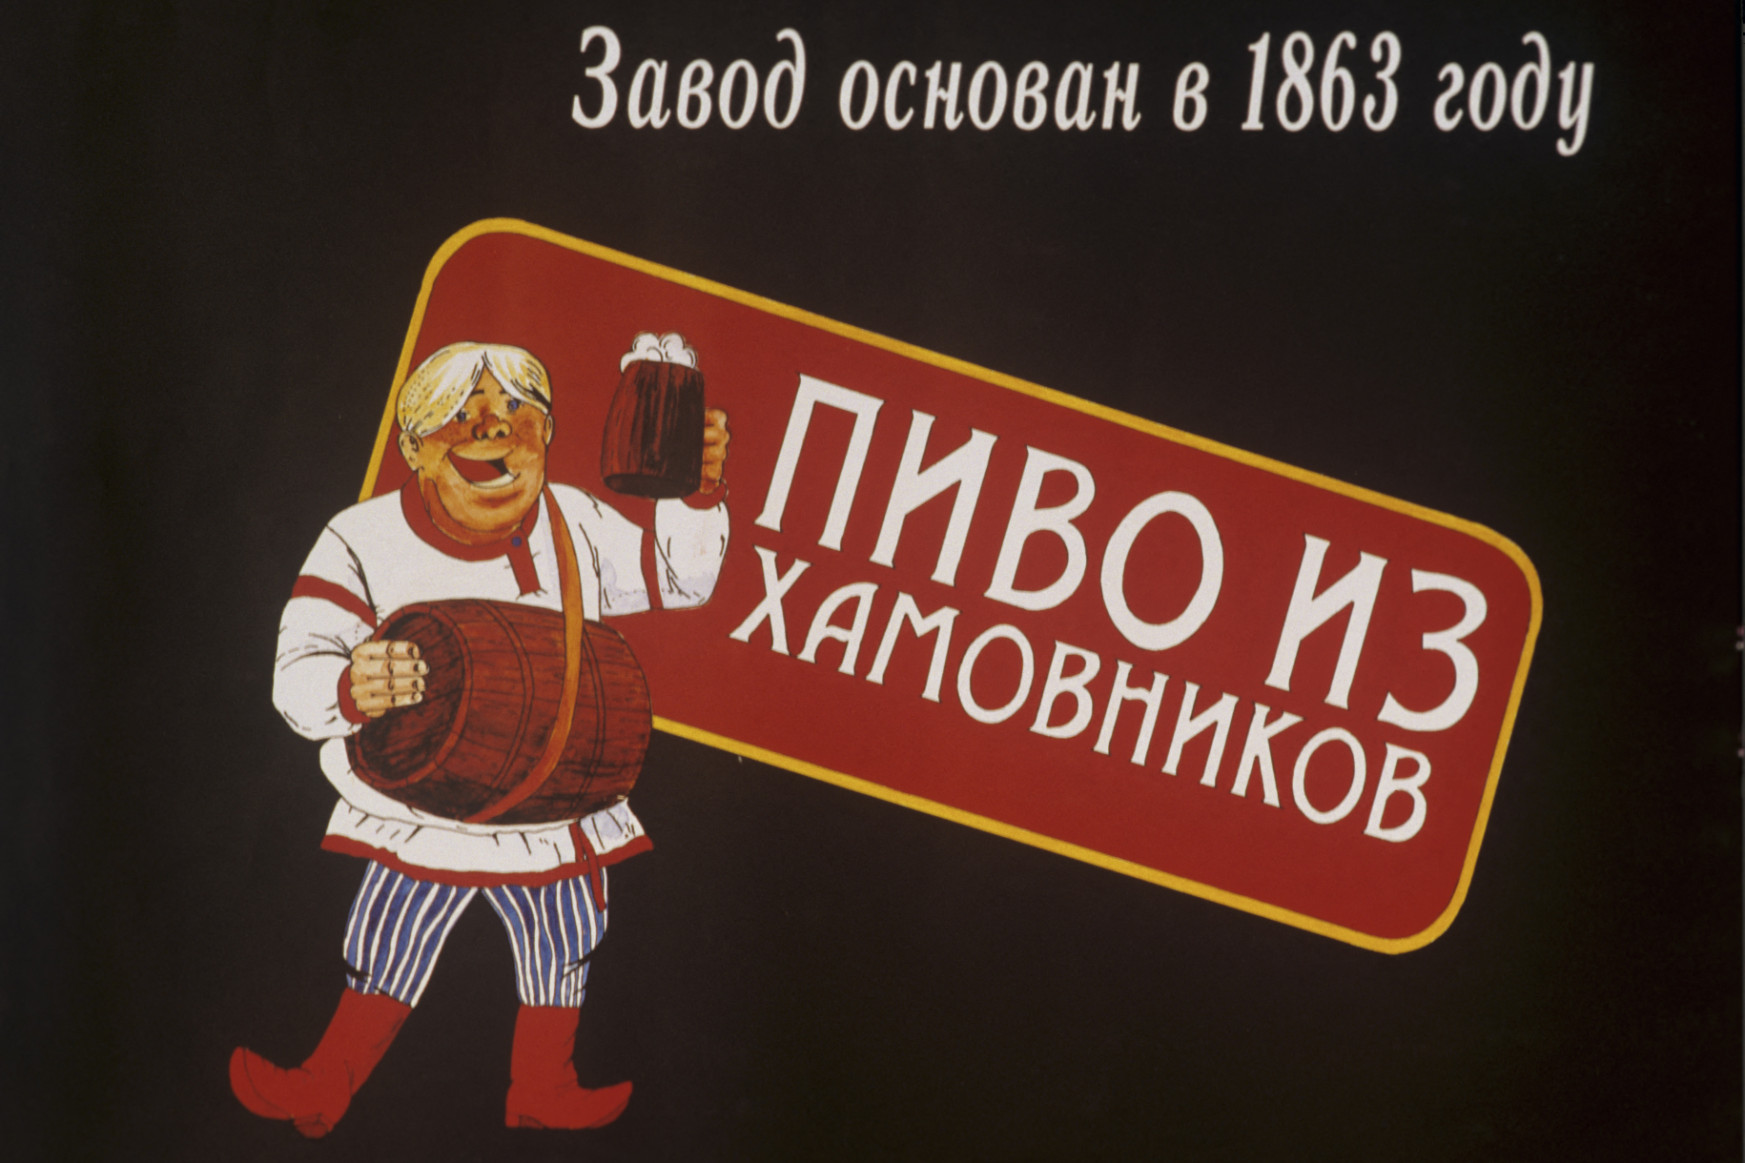 Oroszországban néhány éve még nem számított alkoholos italnak a sör